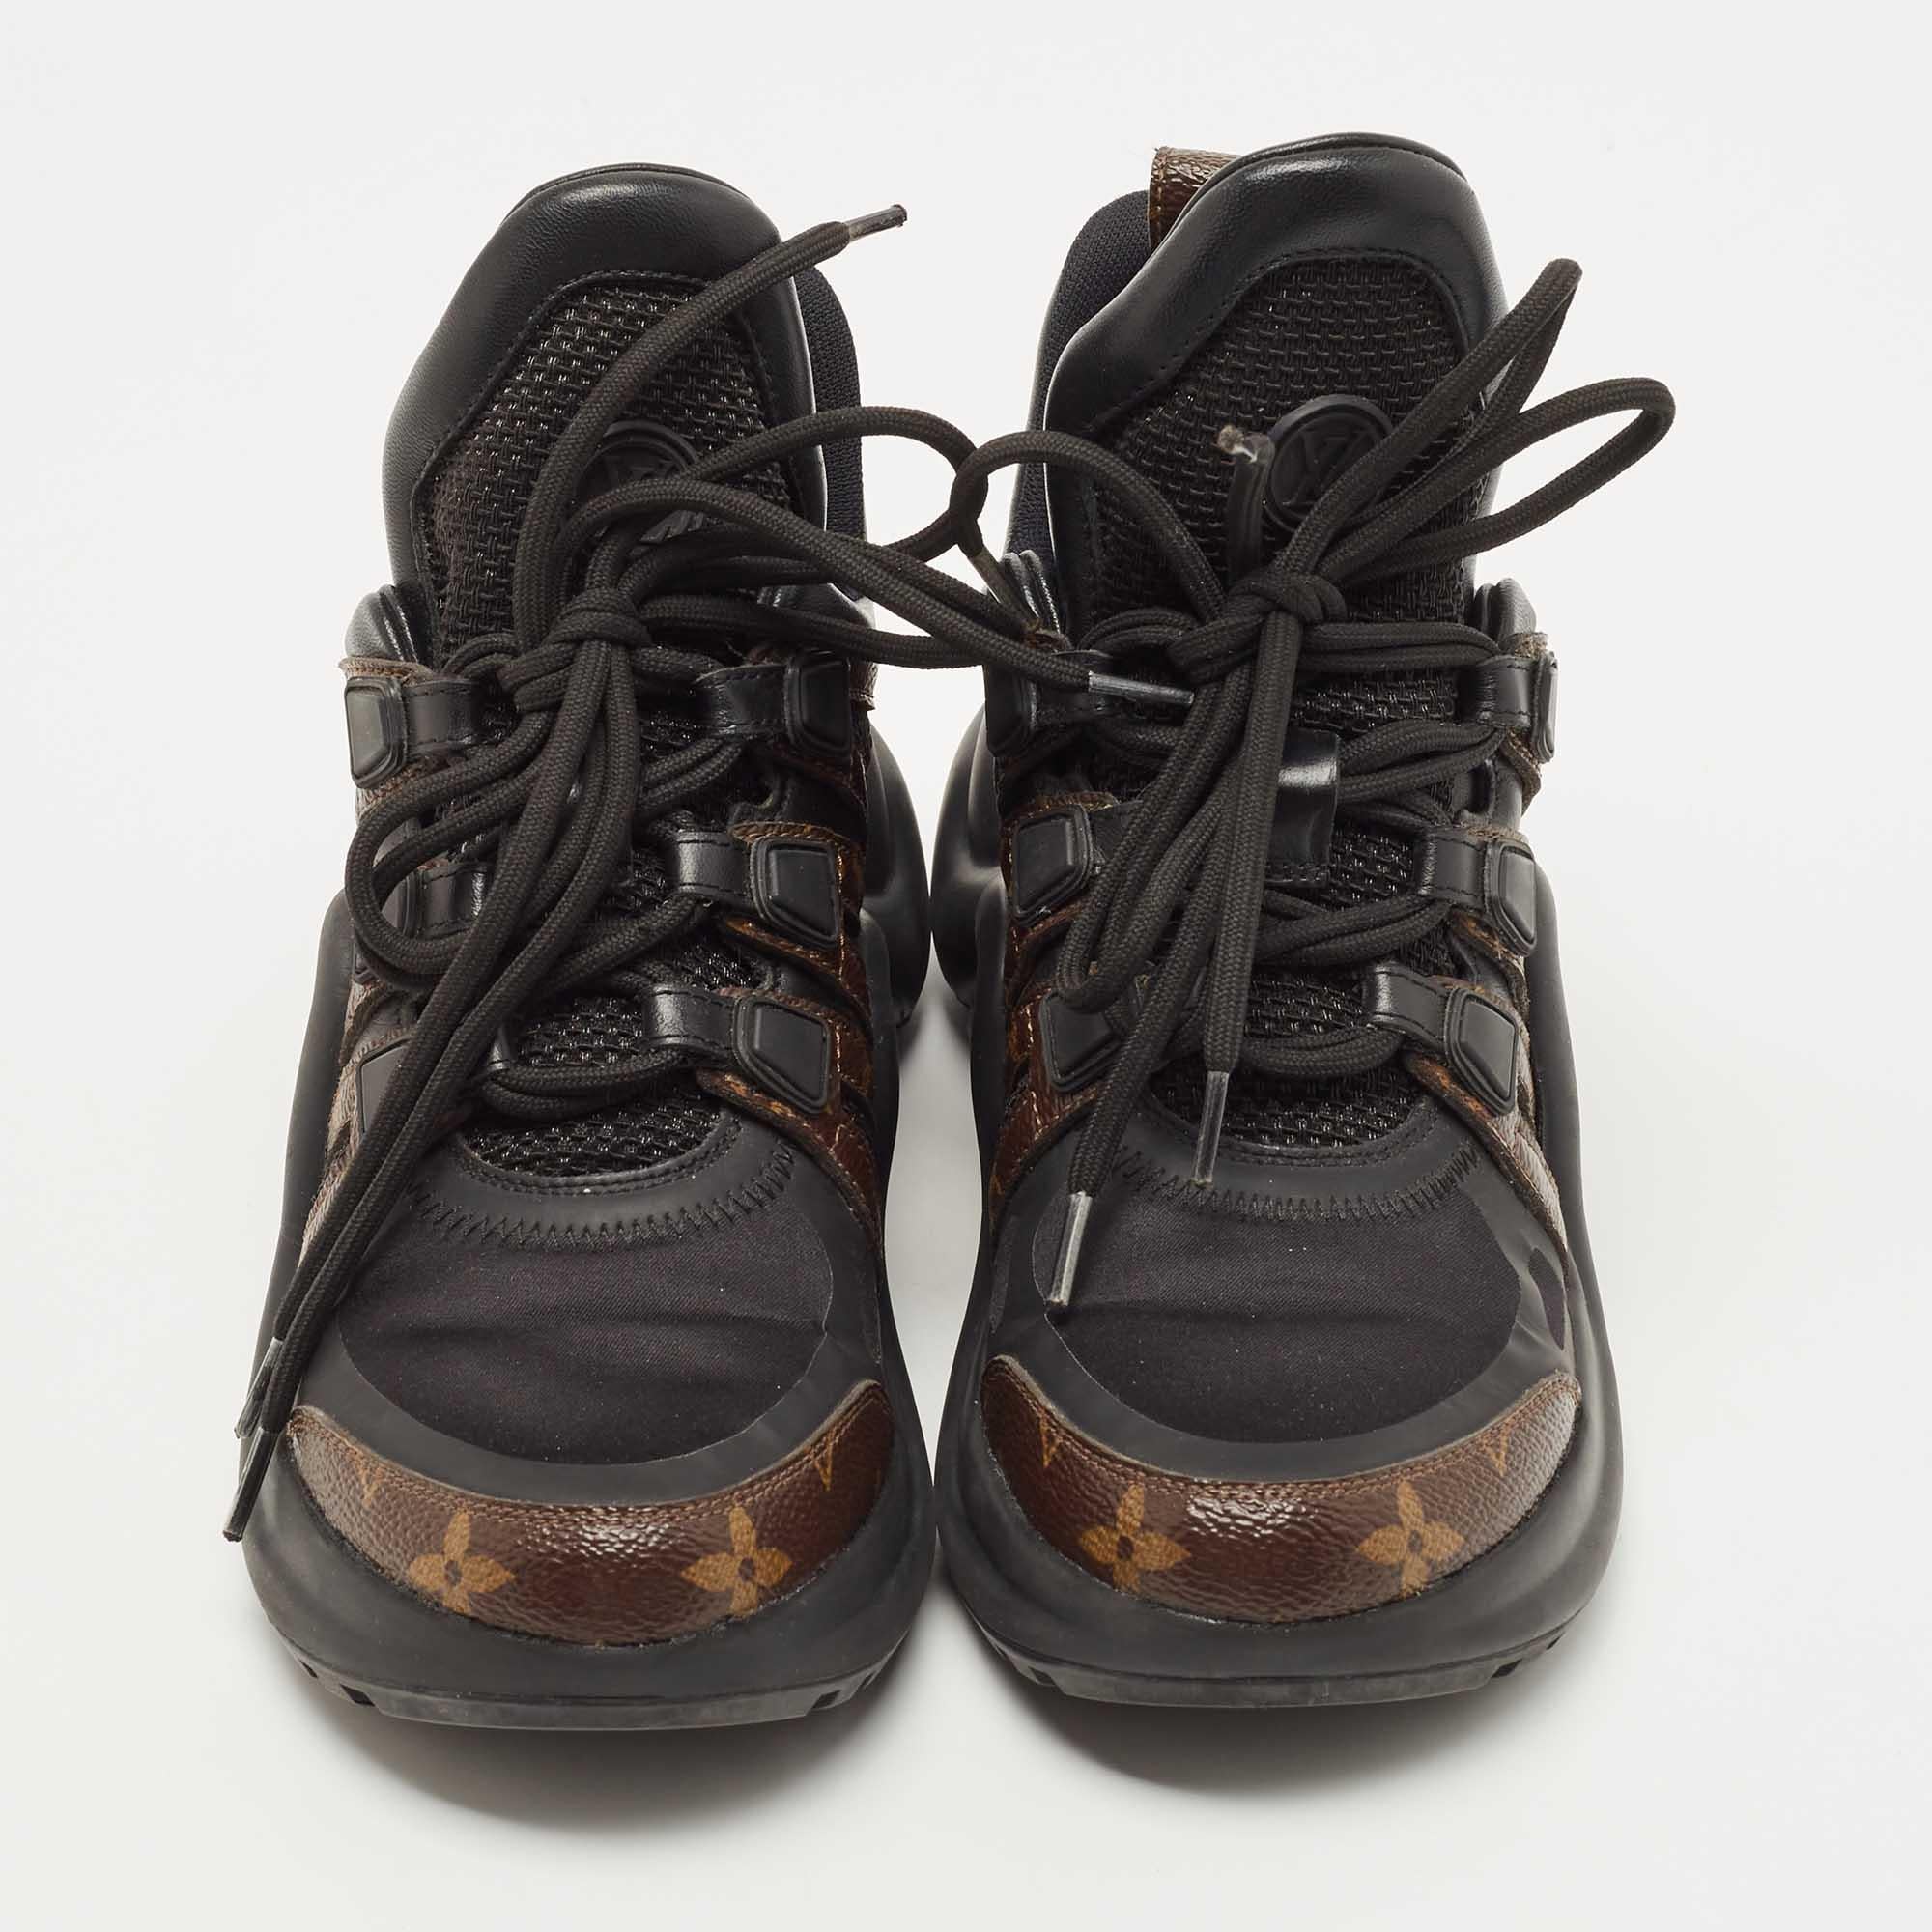 LOUIS VUITTON Stretch Textile LV Archlight Sneaker Boots 36 Black